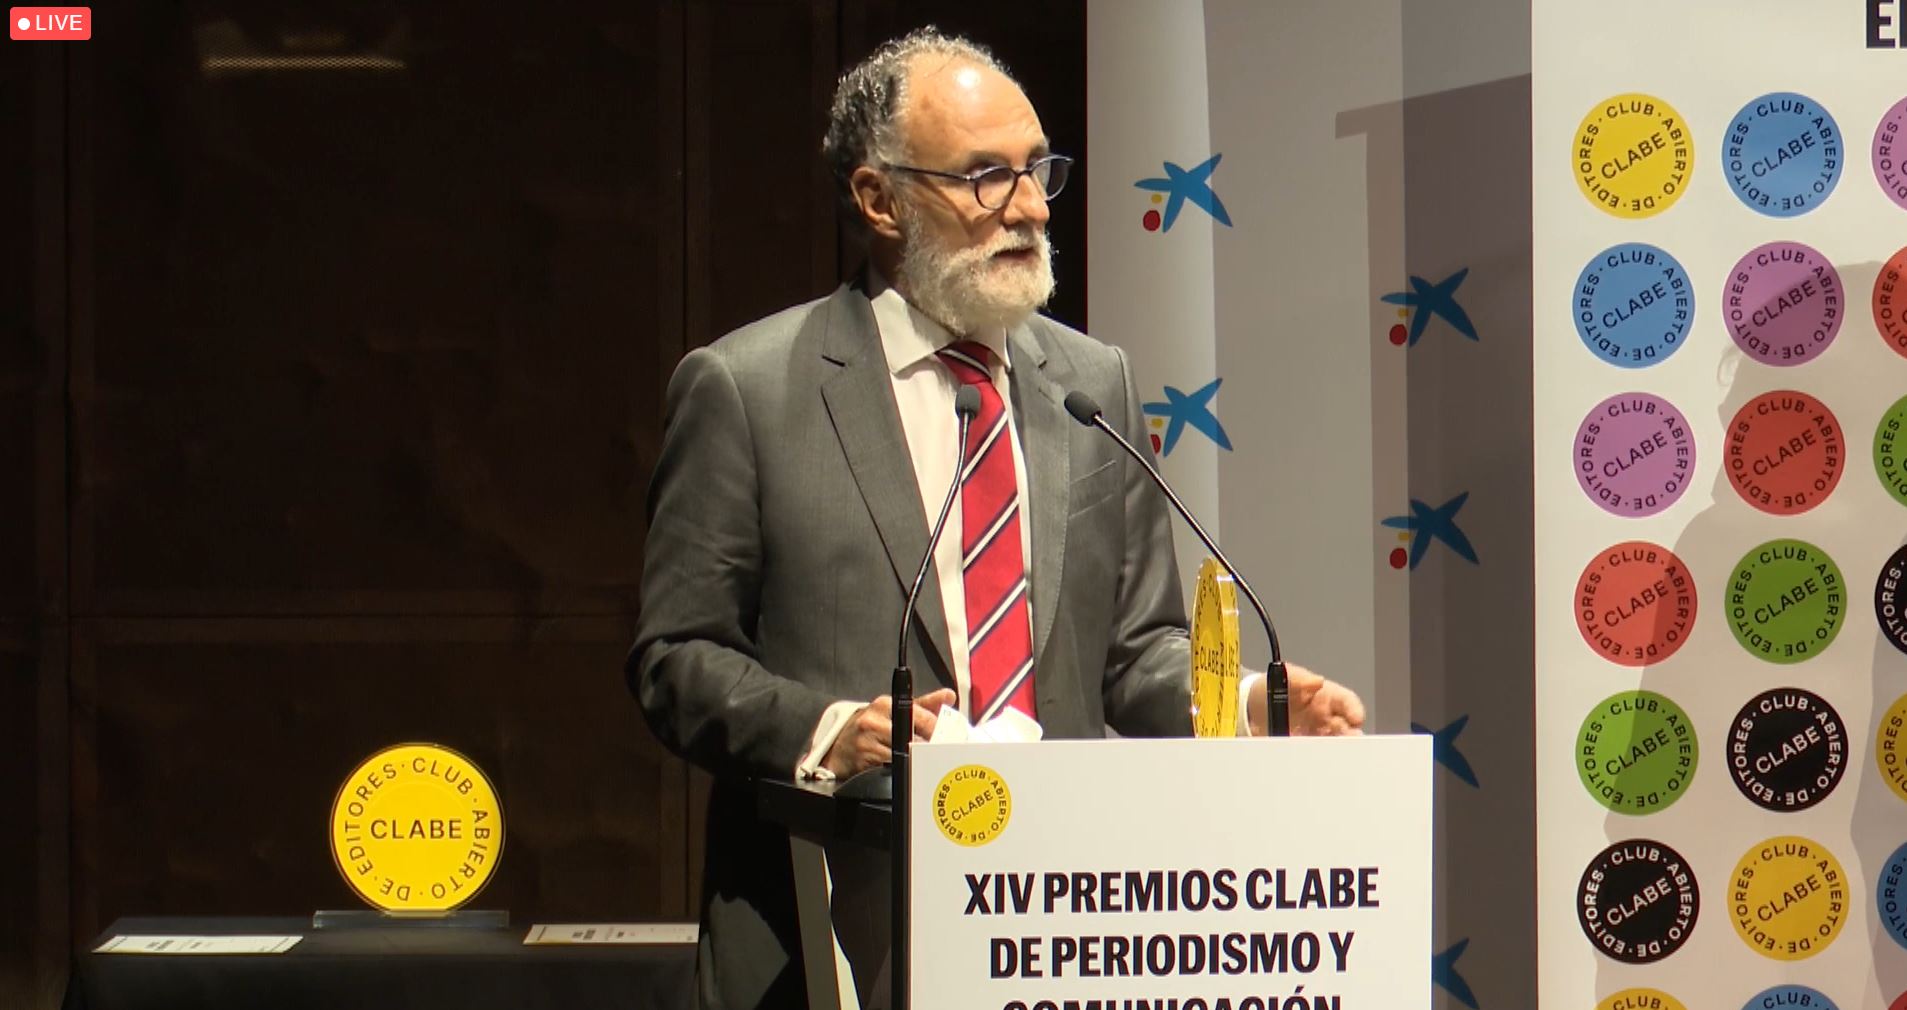 Presidente de Mercasa hablando en atril en XIV premios clase de periodismo y comunicación.